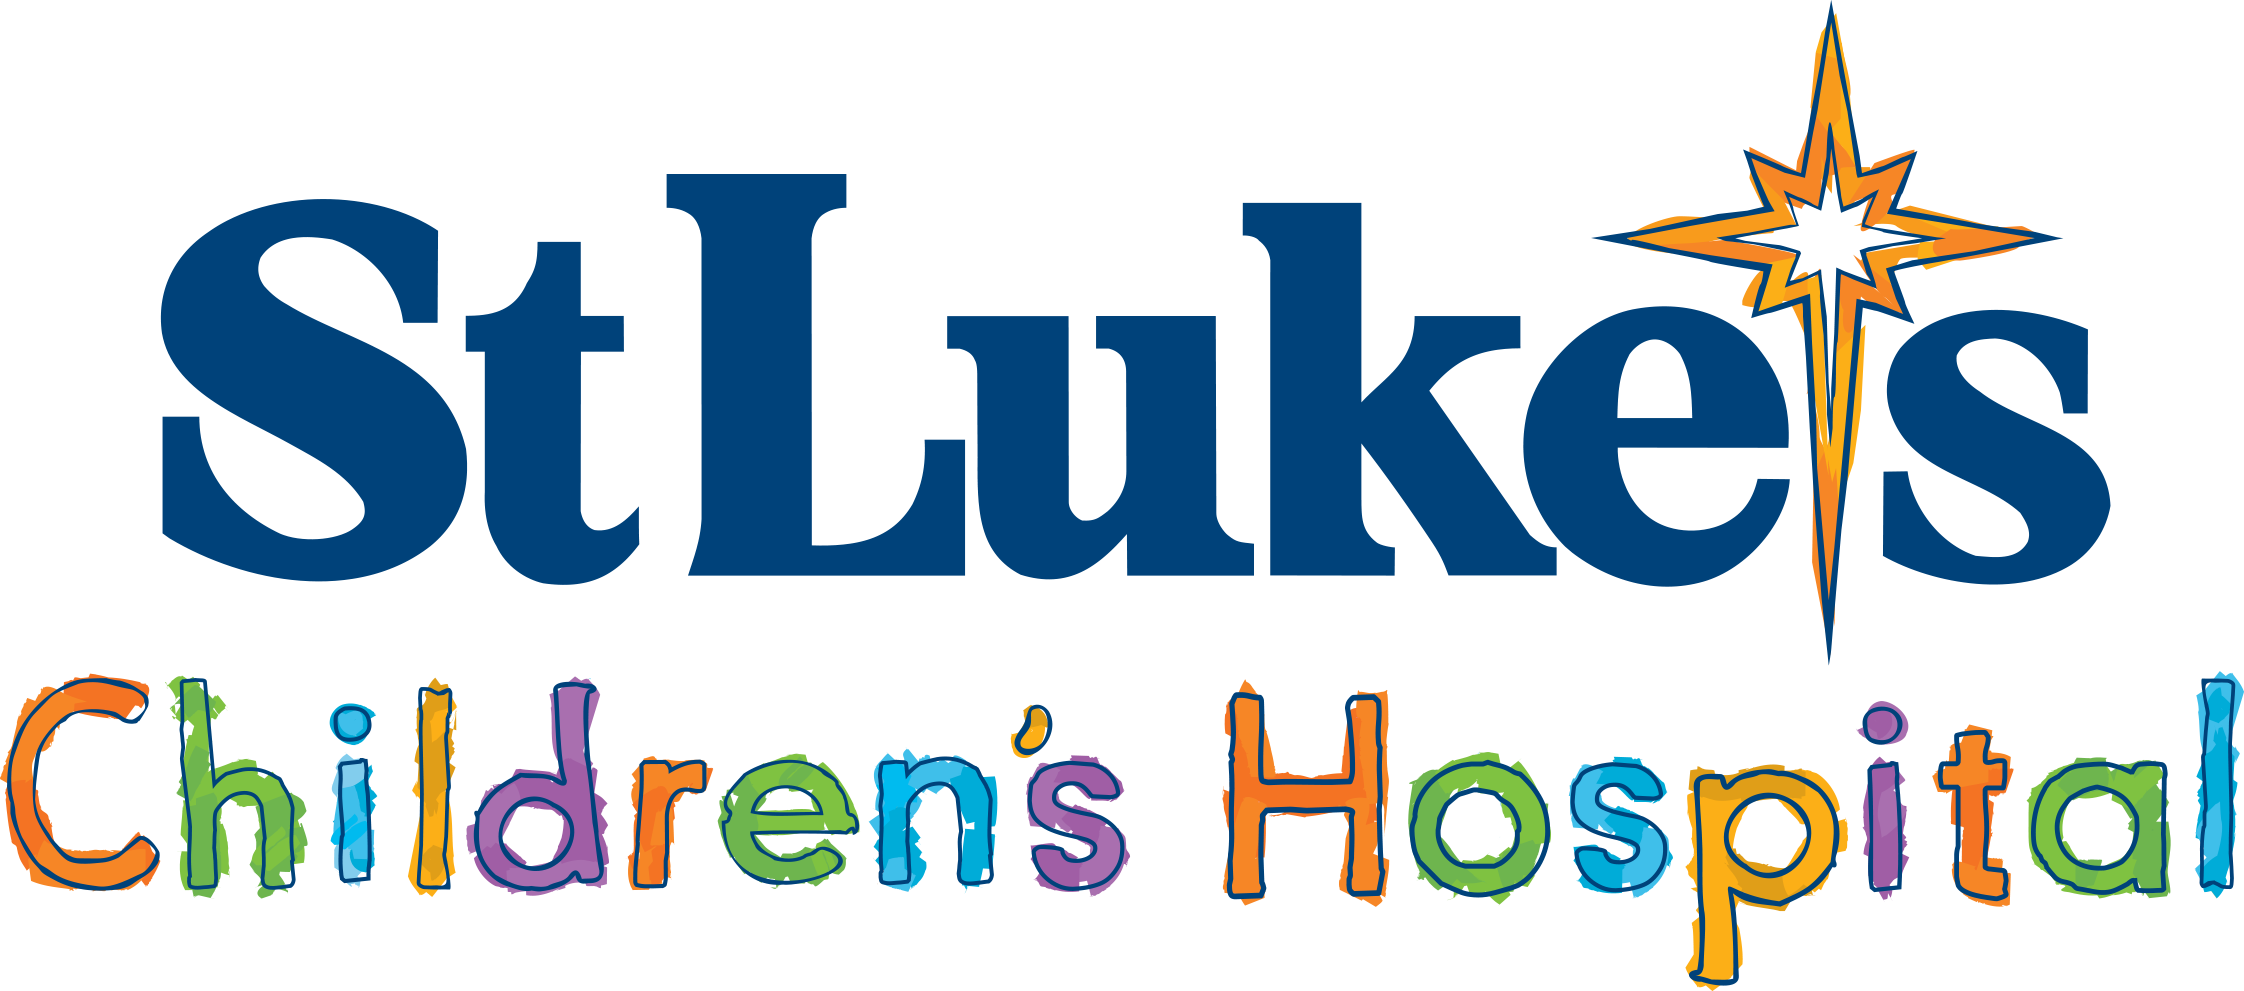 St Luke's Children's Hospital Logo